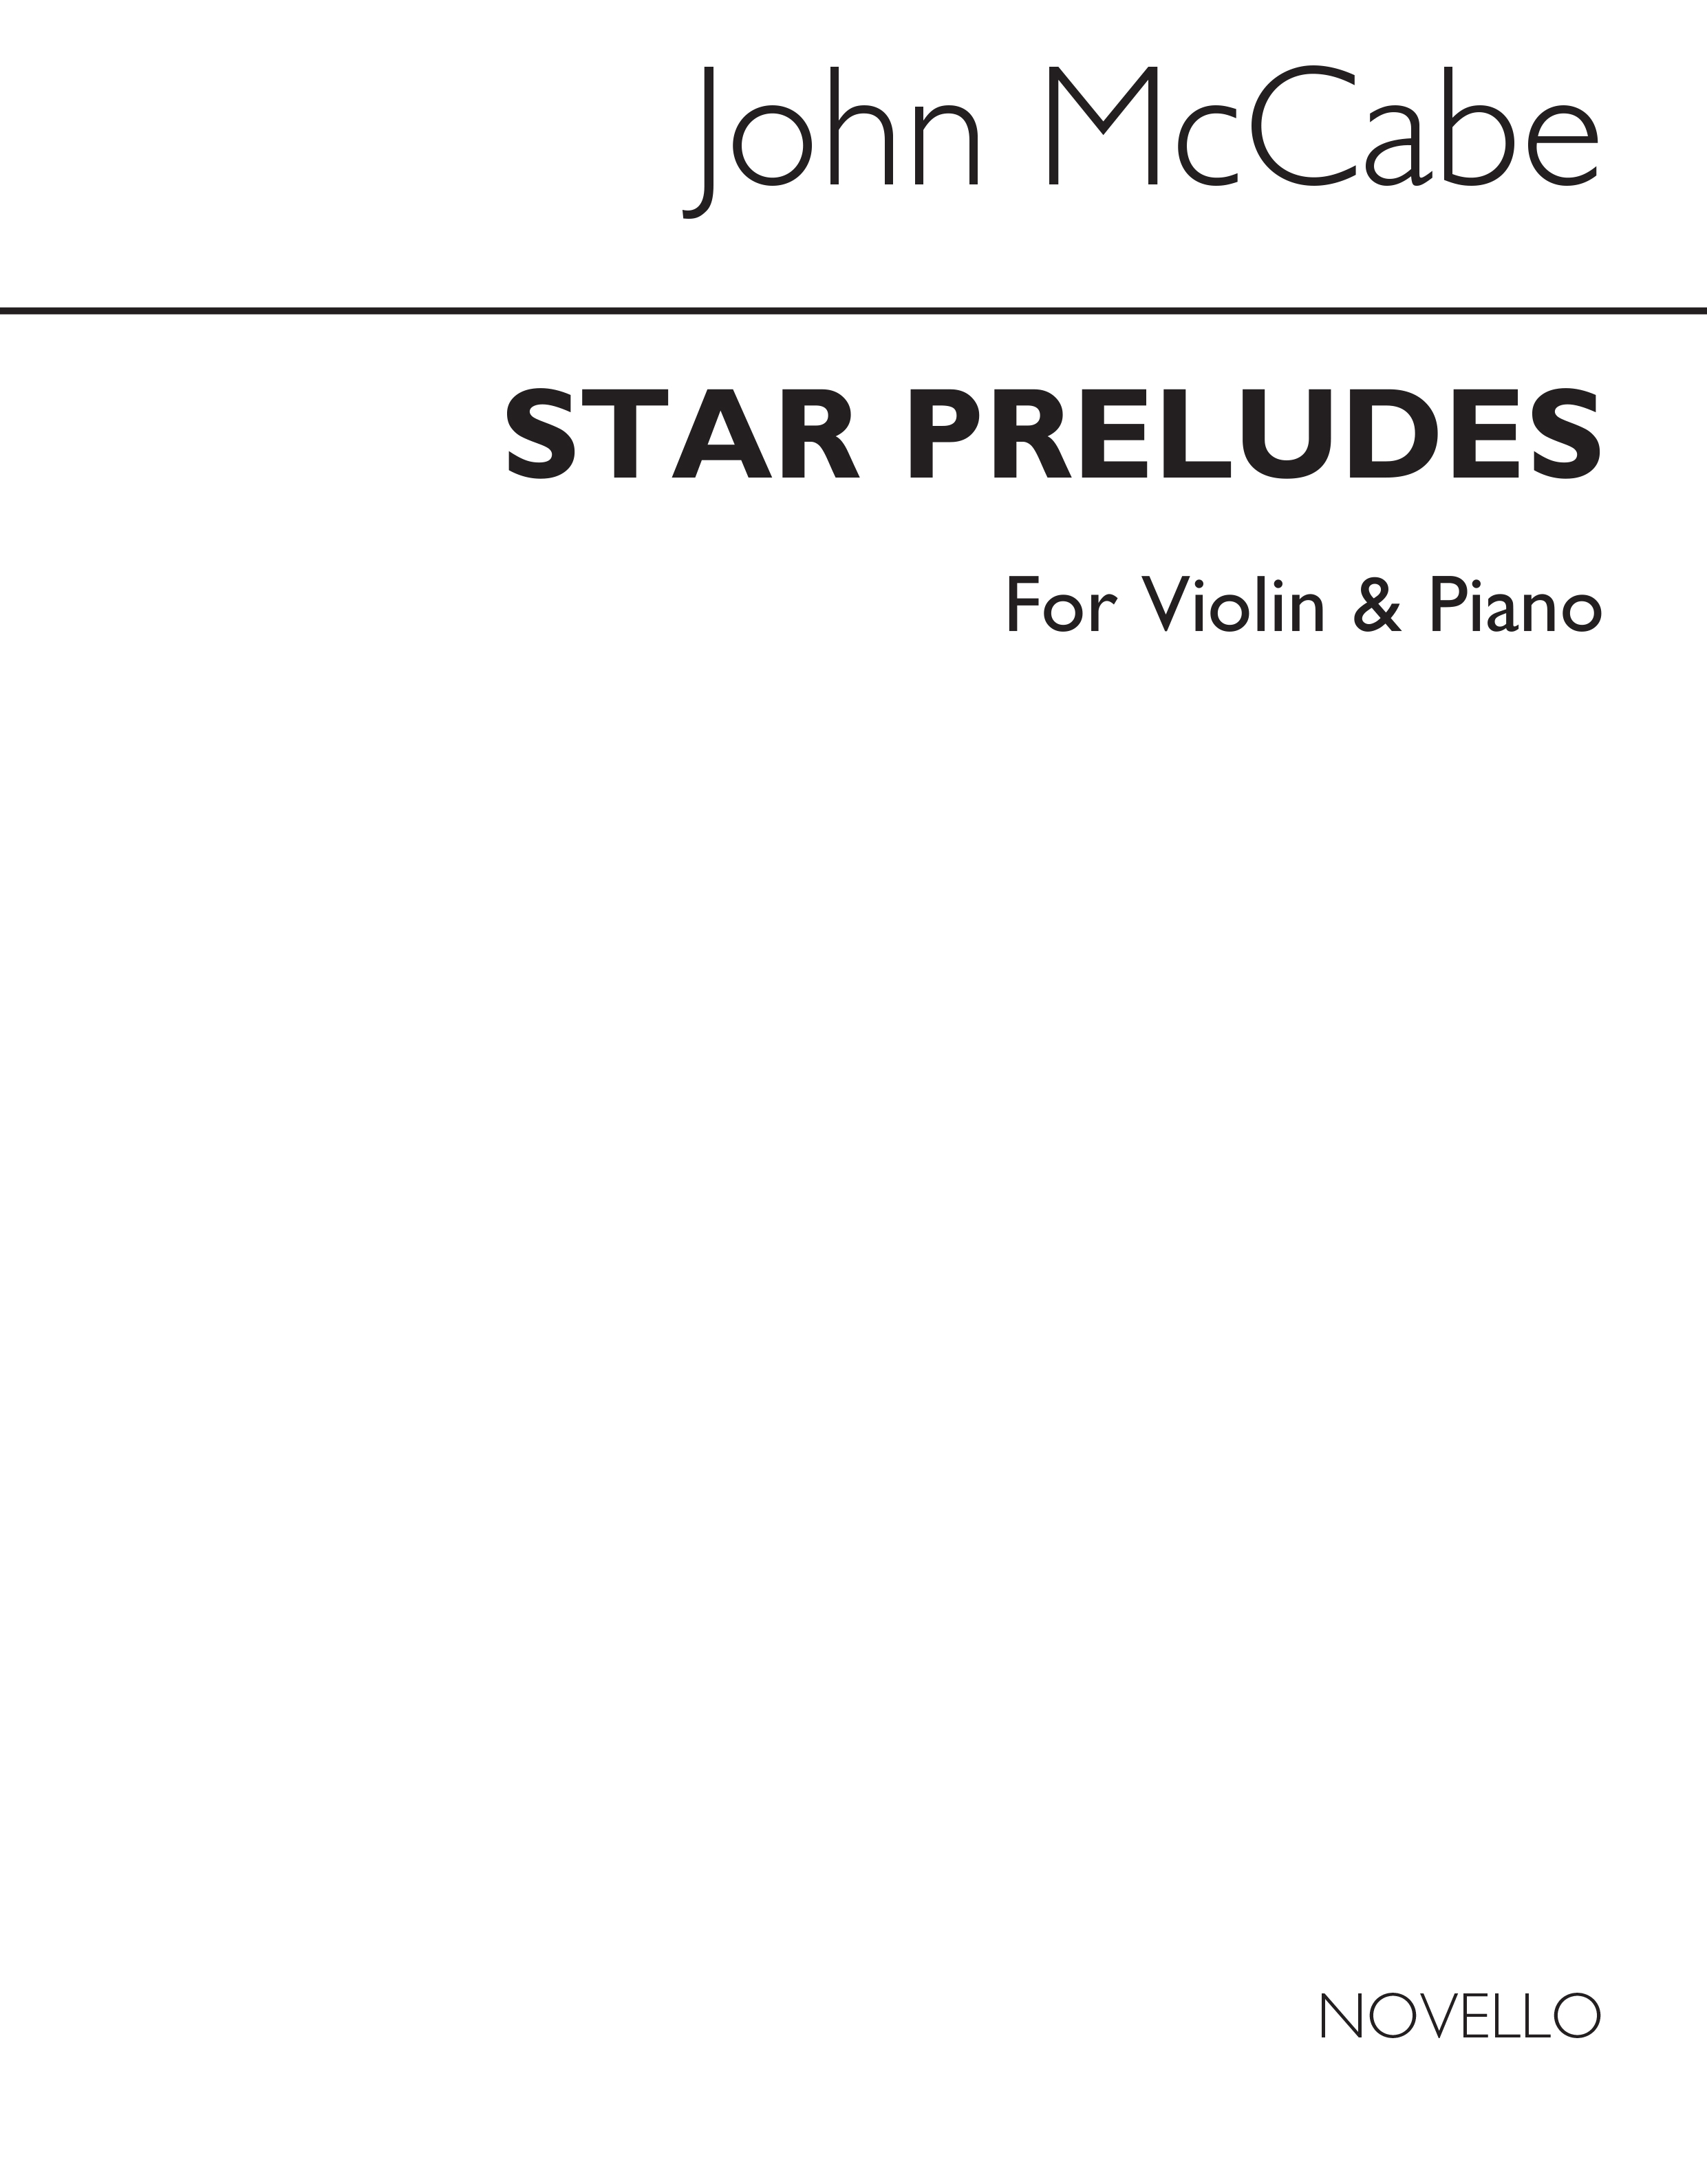 McCabe: Star Preludes for Violin and Piano